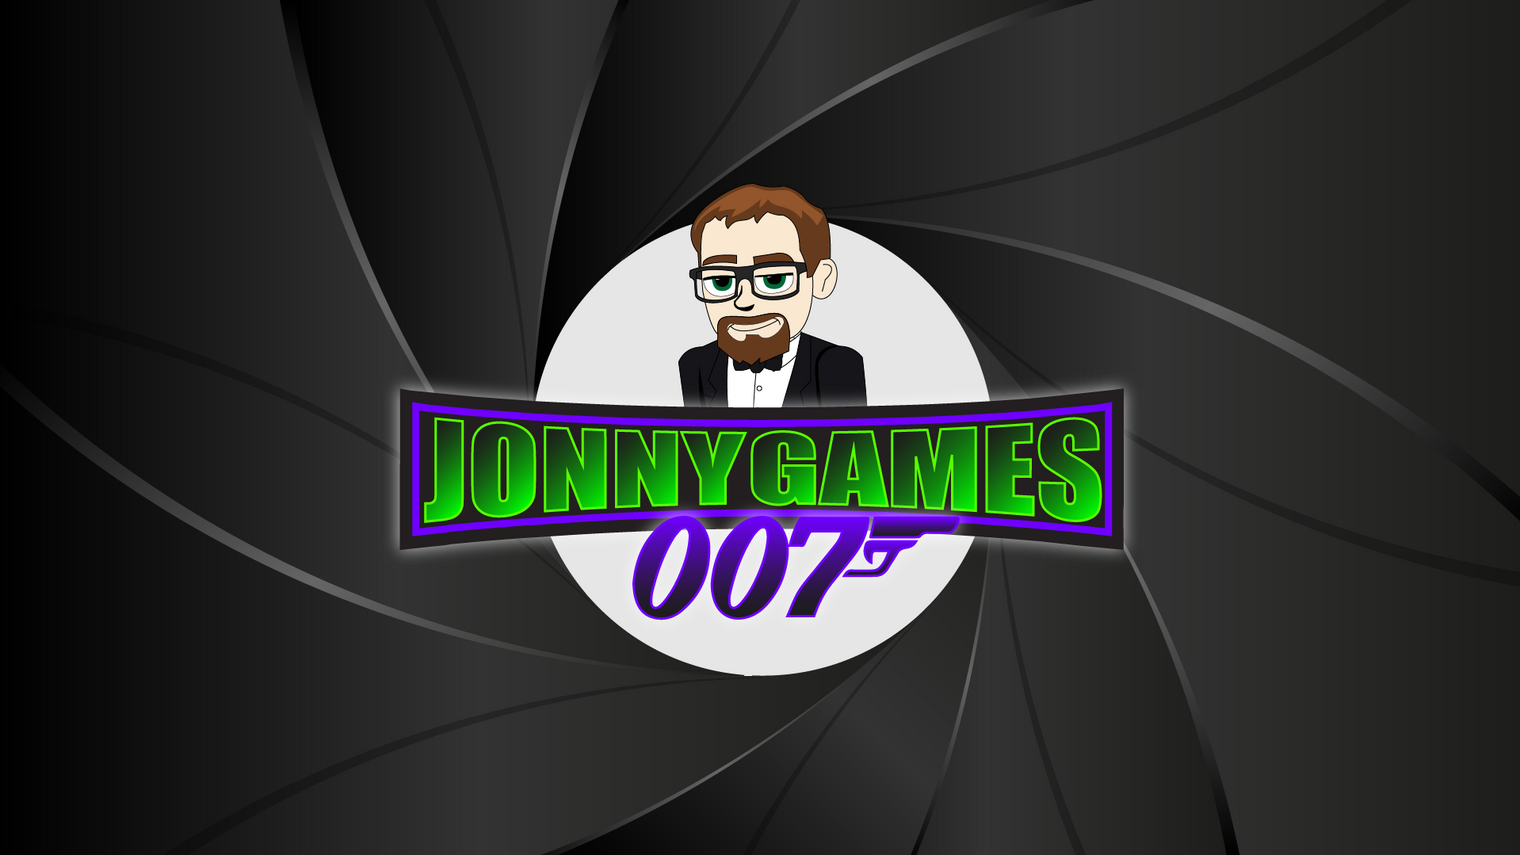 Jonny Games 007